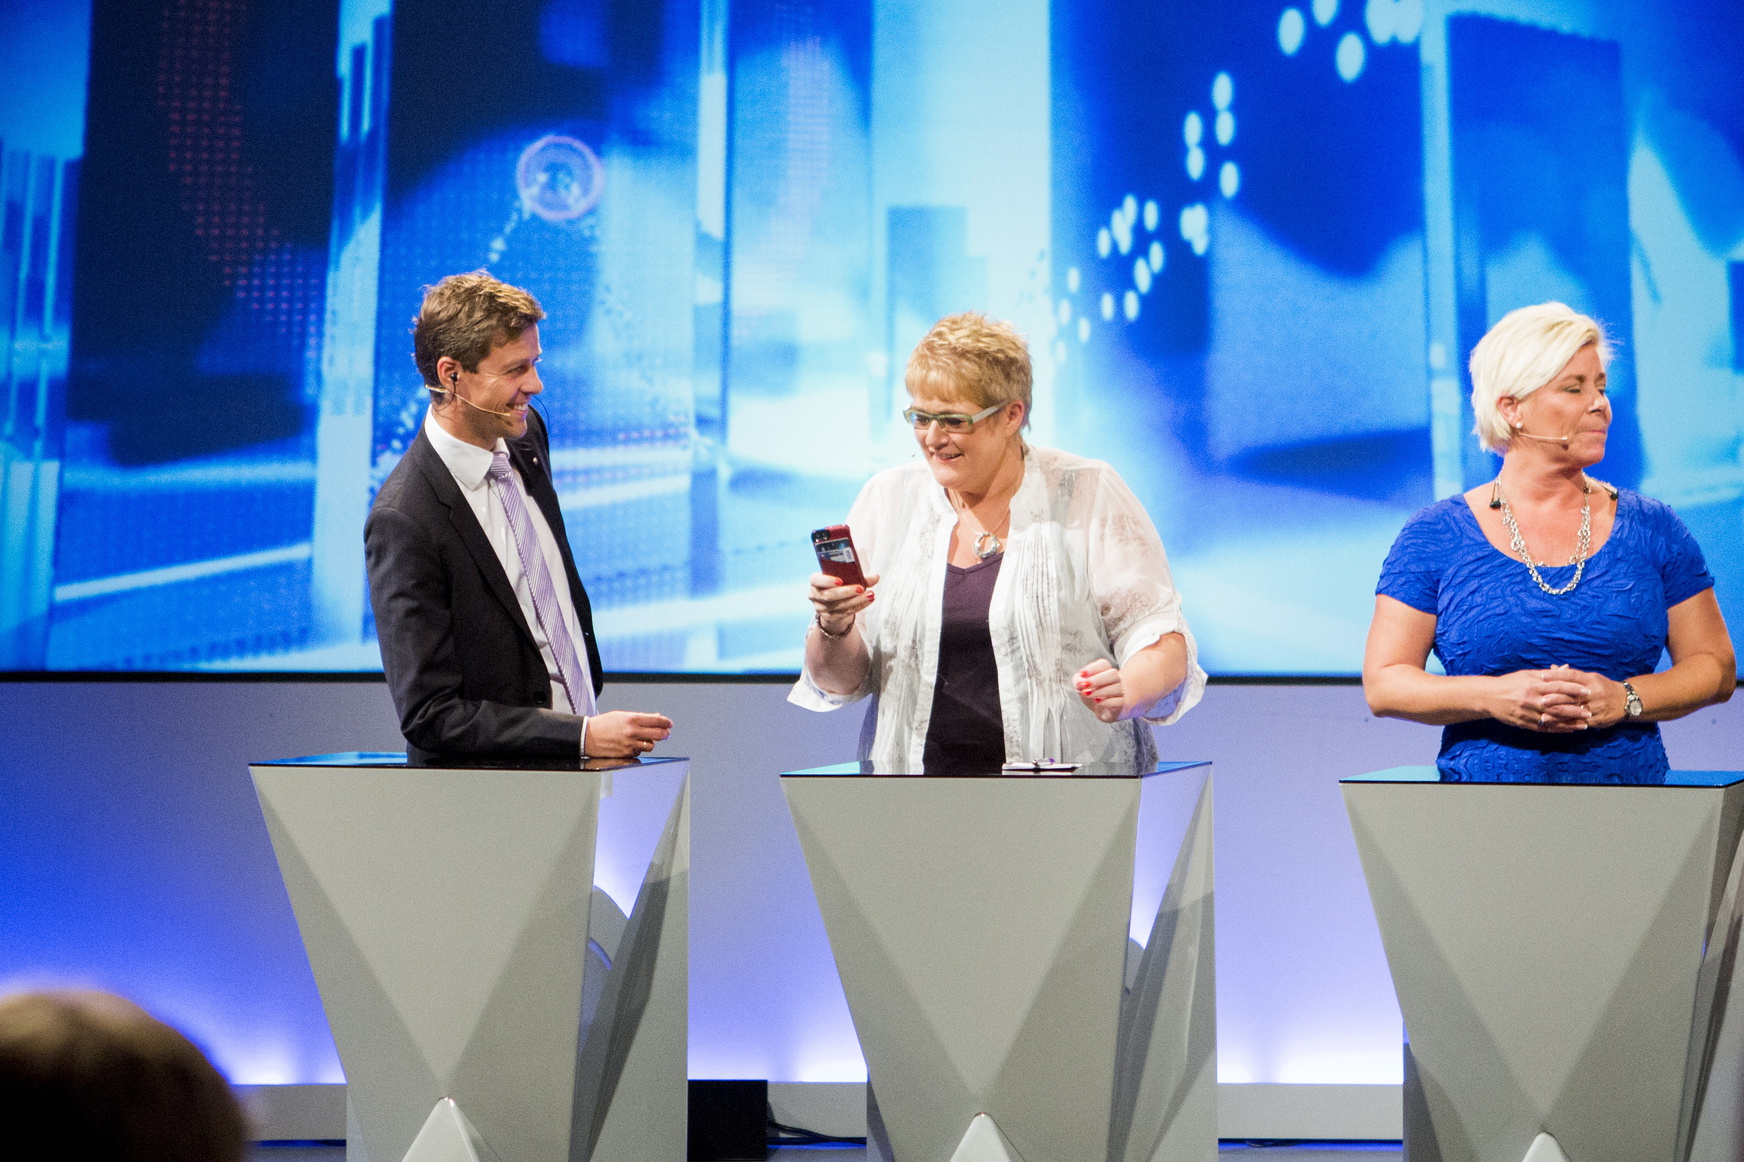 <b>LYDSJEKK:</b> NRK sjekker lyden før kveldens partilederdebatt, og Venstre-leder Trine Skei Grande sjekker mobilen. Knut Arild Hareide (KrF) til venstre, og Siv Jensen (Frp) til høyre.